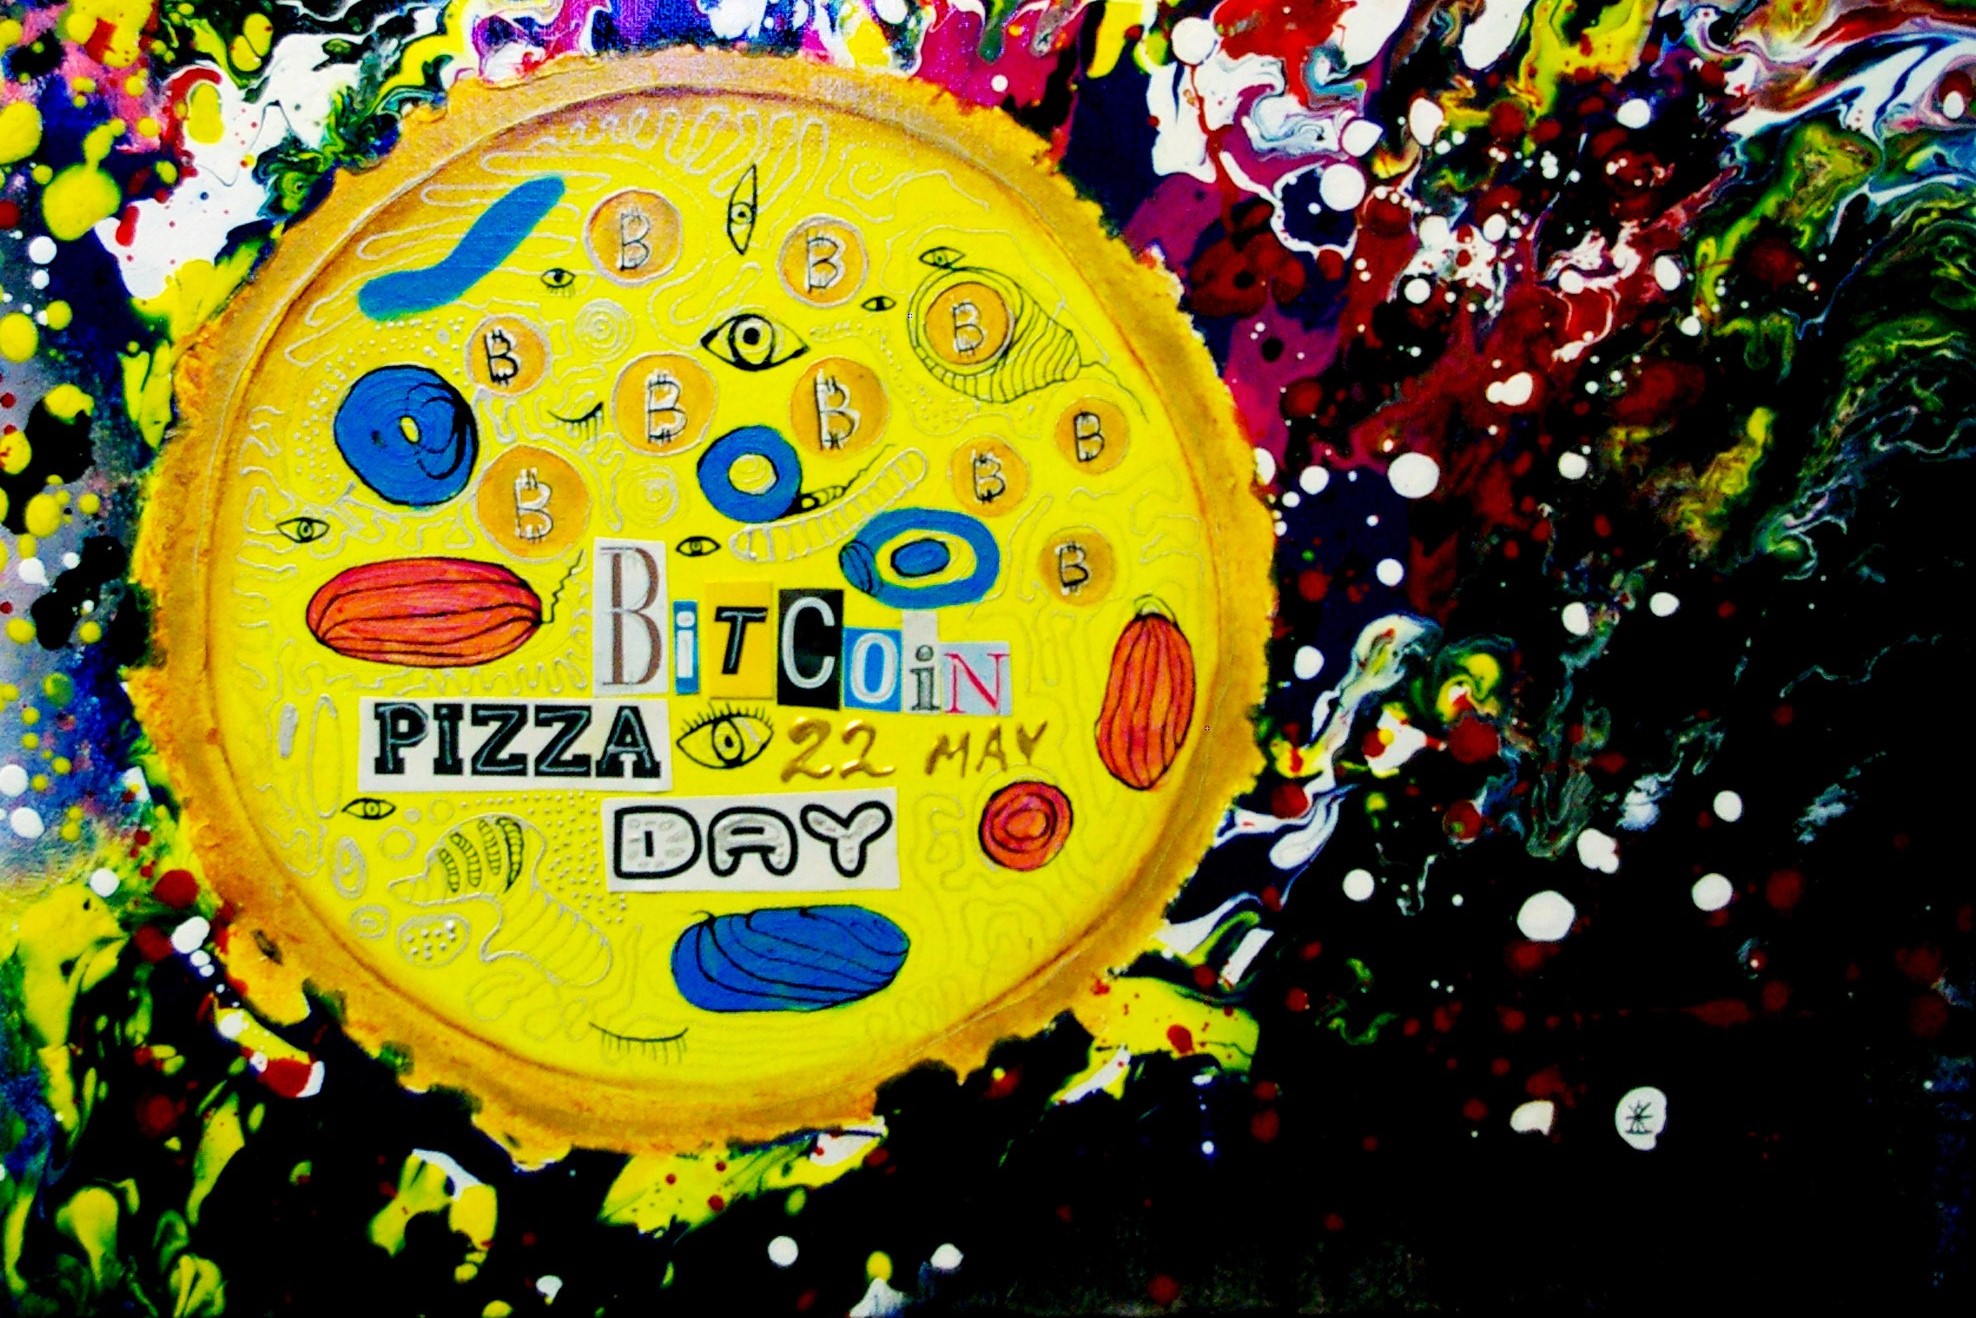 Le menu du jour de la pizza Bitcoin: blagues, événements, nouveaux produits et Kebab